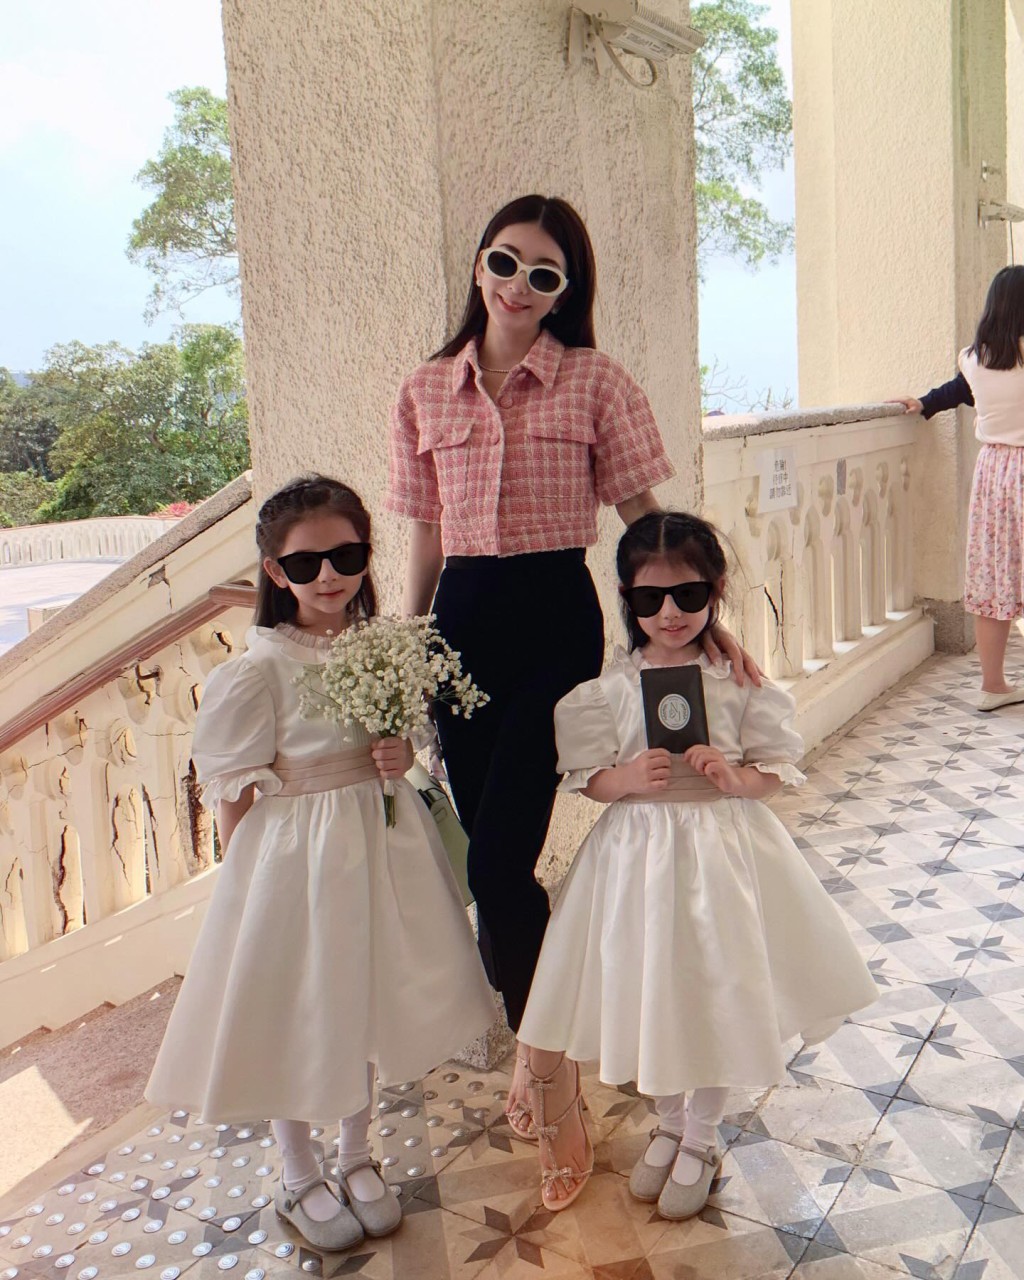 方媛昨日（23日）在IG分享与两个女儿参加婚的照片，网民都指大女越来越似妈妈，细女很像爸爸。